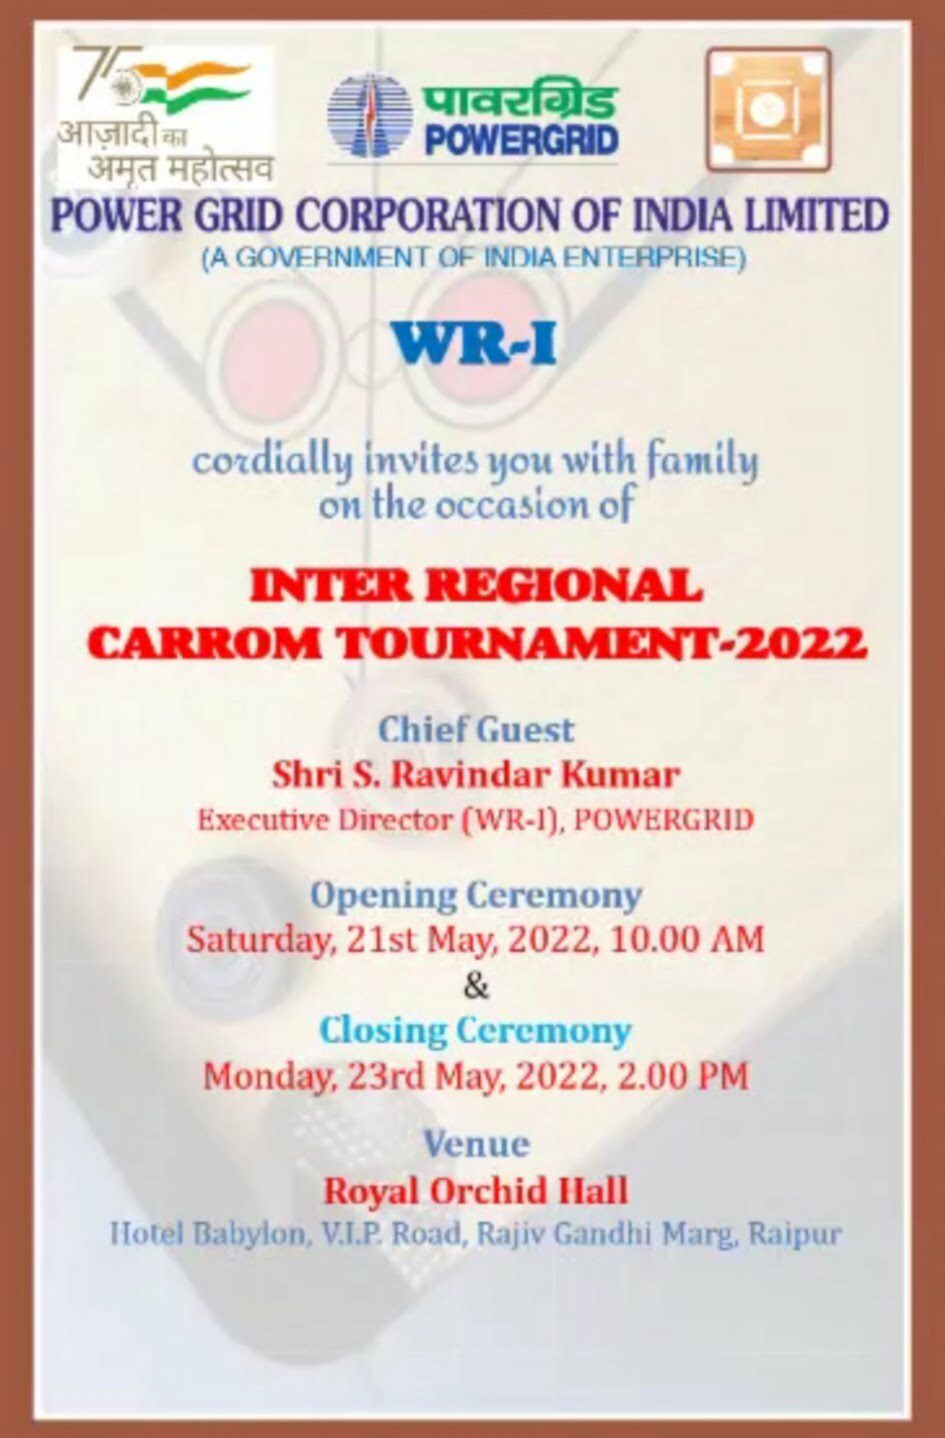 पावर ग्रिड अंतर क्षेत्रीय कैरम प्रतियोगिता का आयोजन 21 मई से, 11 पावर ग्रिड के खिलाड़ी होंगे शामिल